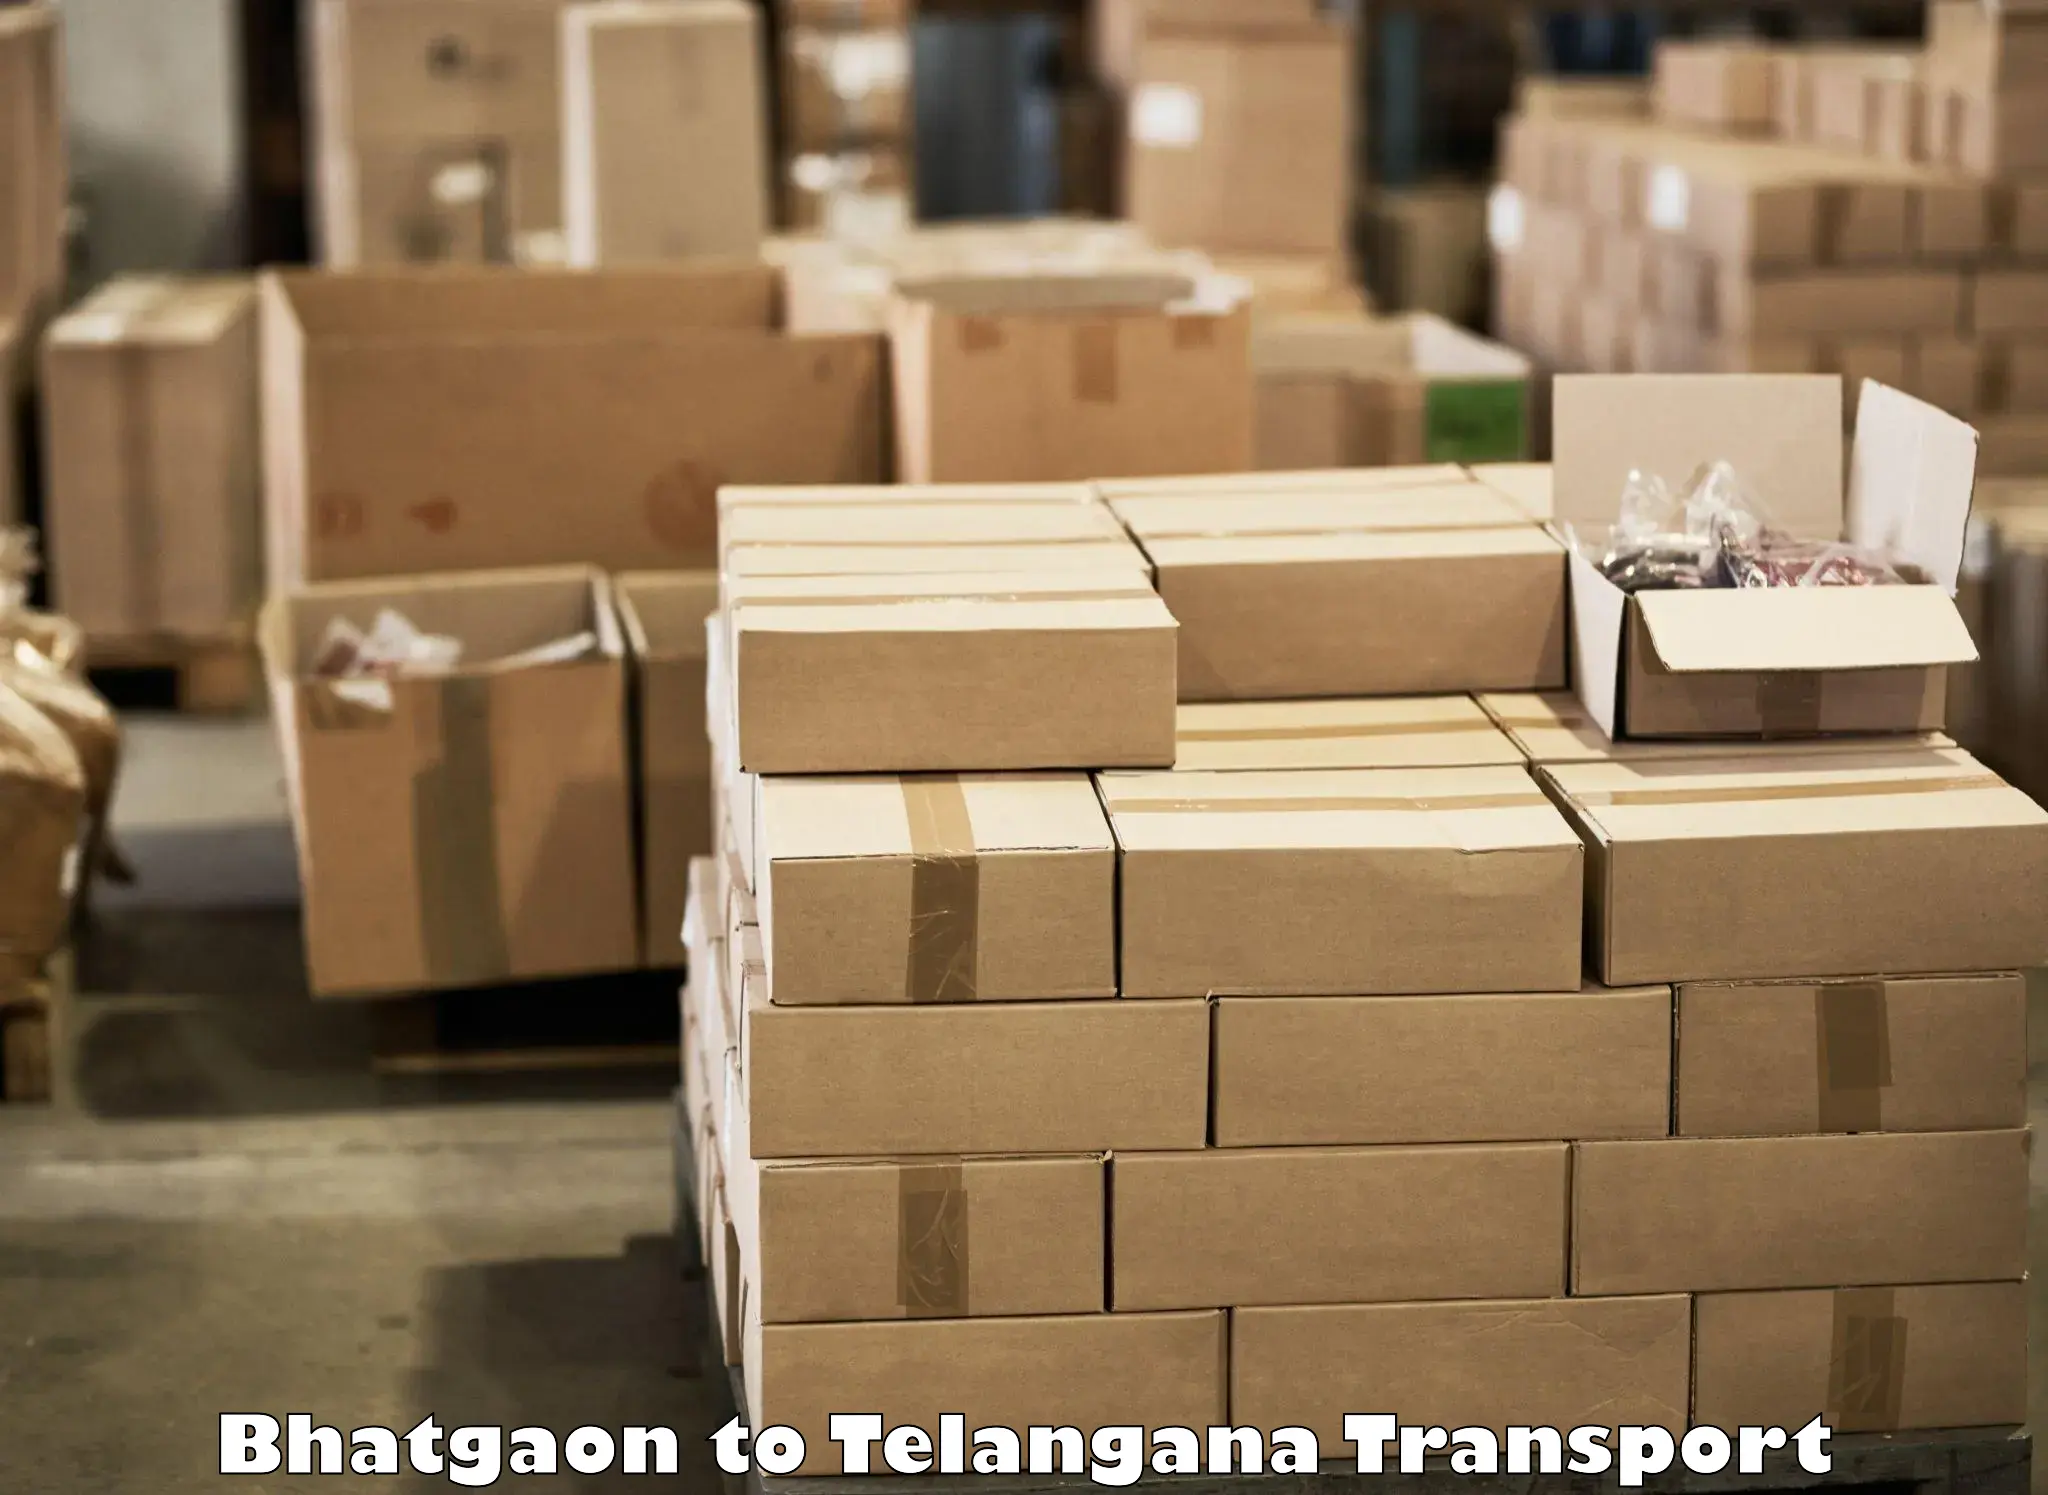 Furniture transport service Bhatgaon to Yellareddipet